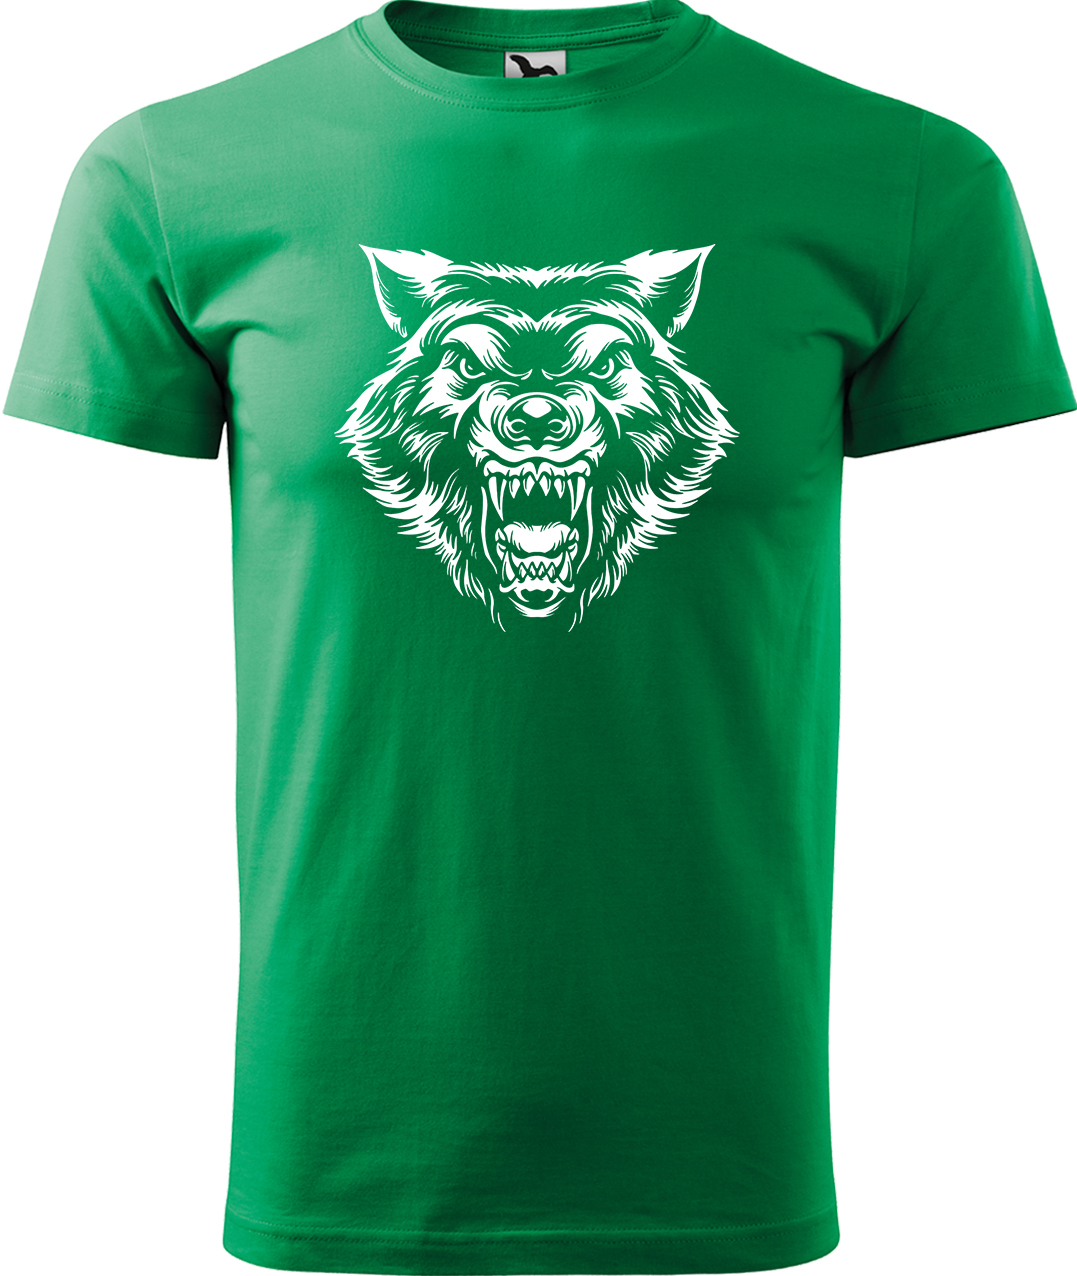 Pánské tričko s vlkem - Rozzuřený vlk Velikost: 3XL, Barva: Středně zelená (16), Střih: pánský